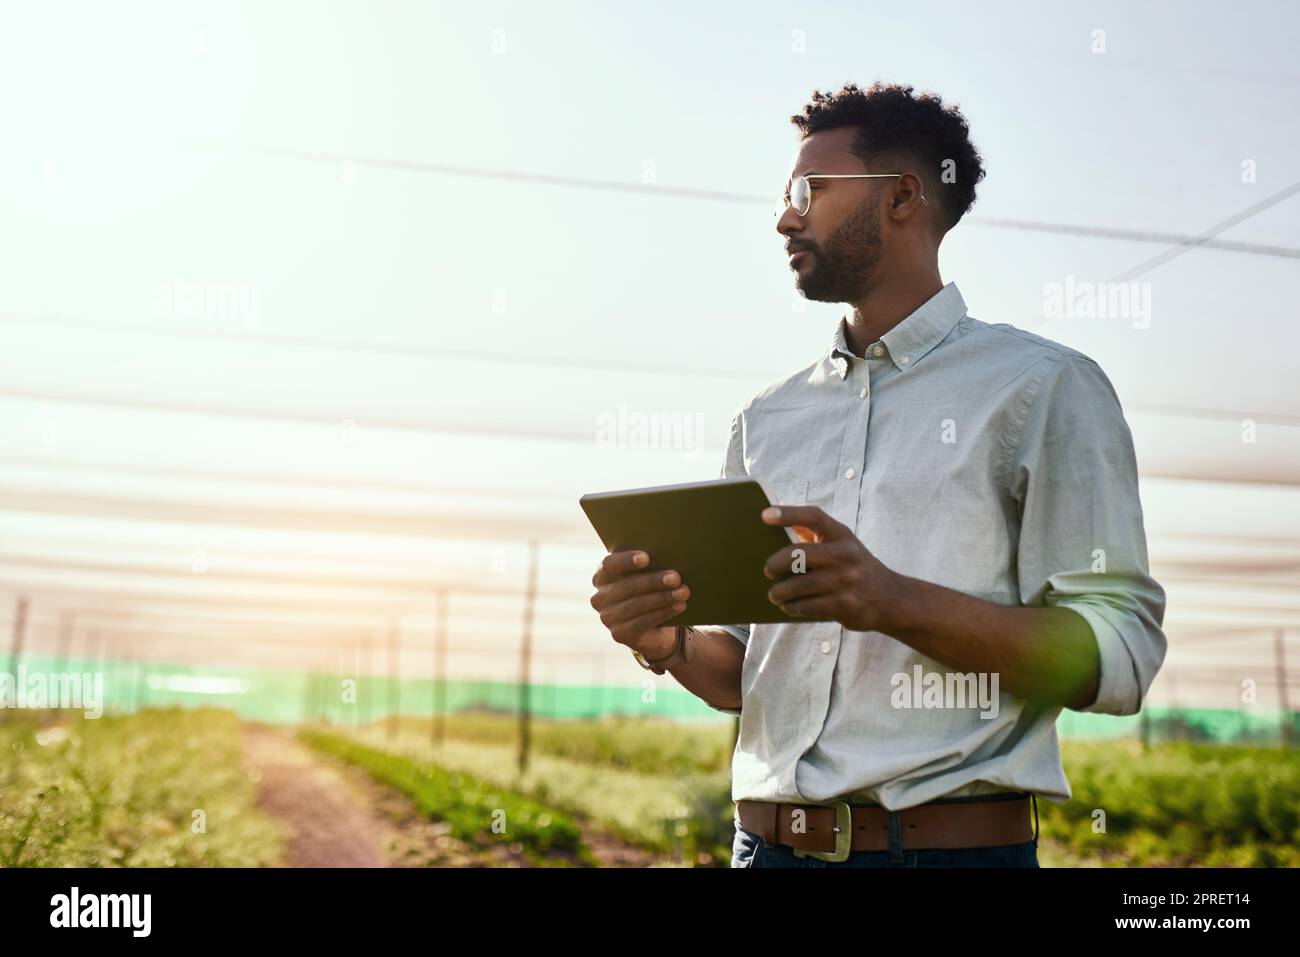 Denkender Landwirt mit digitalem Tablet, der nachhaltiges Wachstum, Fortschritte oder die Vorbereitung von Exportaufträgen für landwirtschaftliche Betriebe mit Technologie prüft. Seriöser Mensch, Gärtner oder Gewächshauswissenschaftler auf einem Landgut Stockfoto